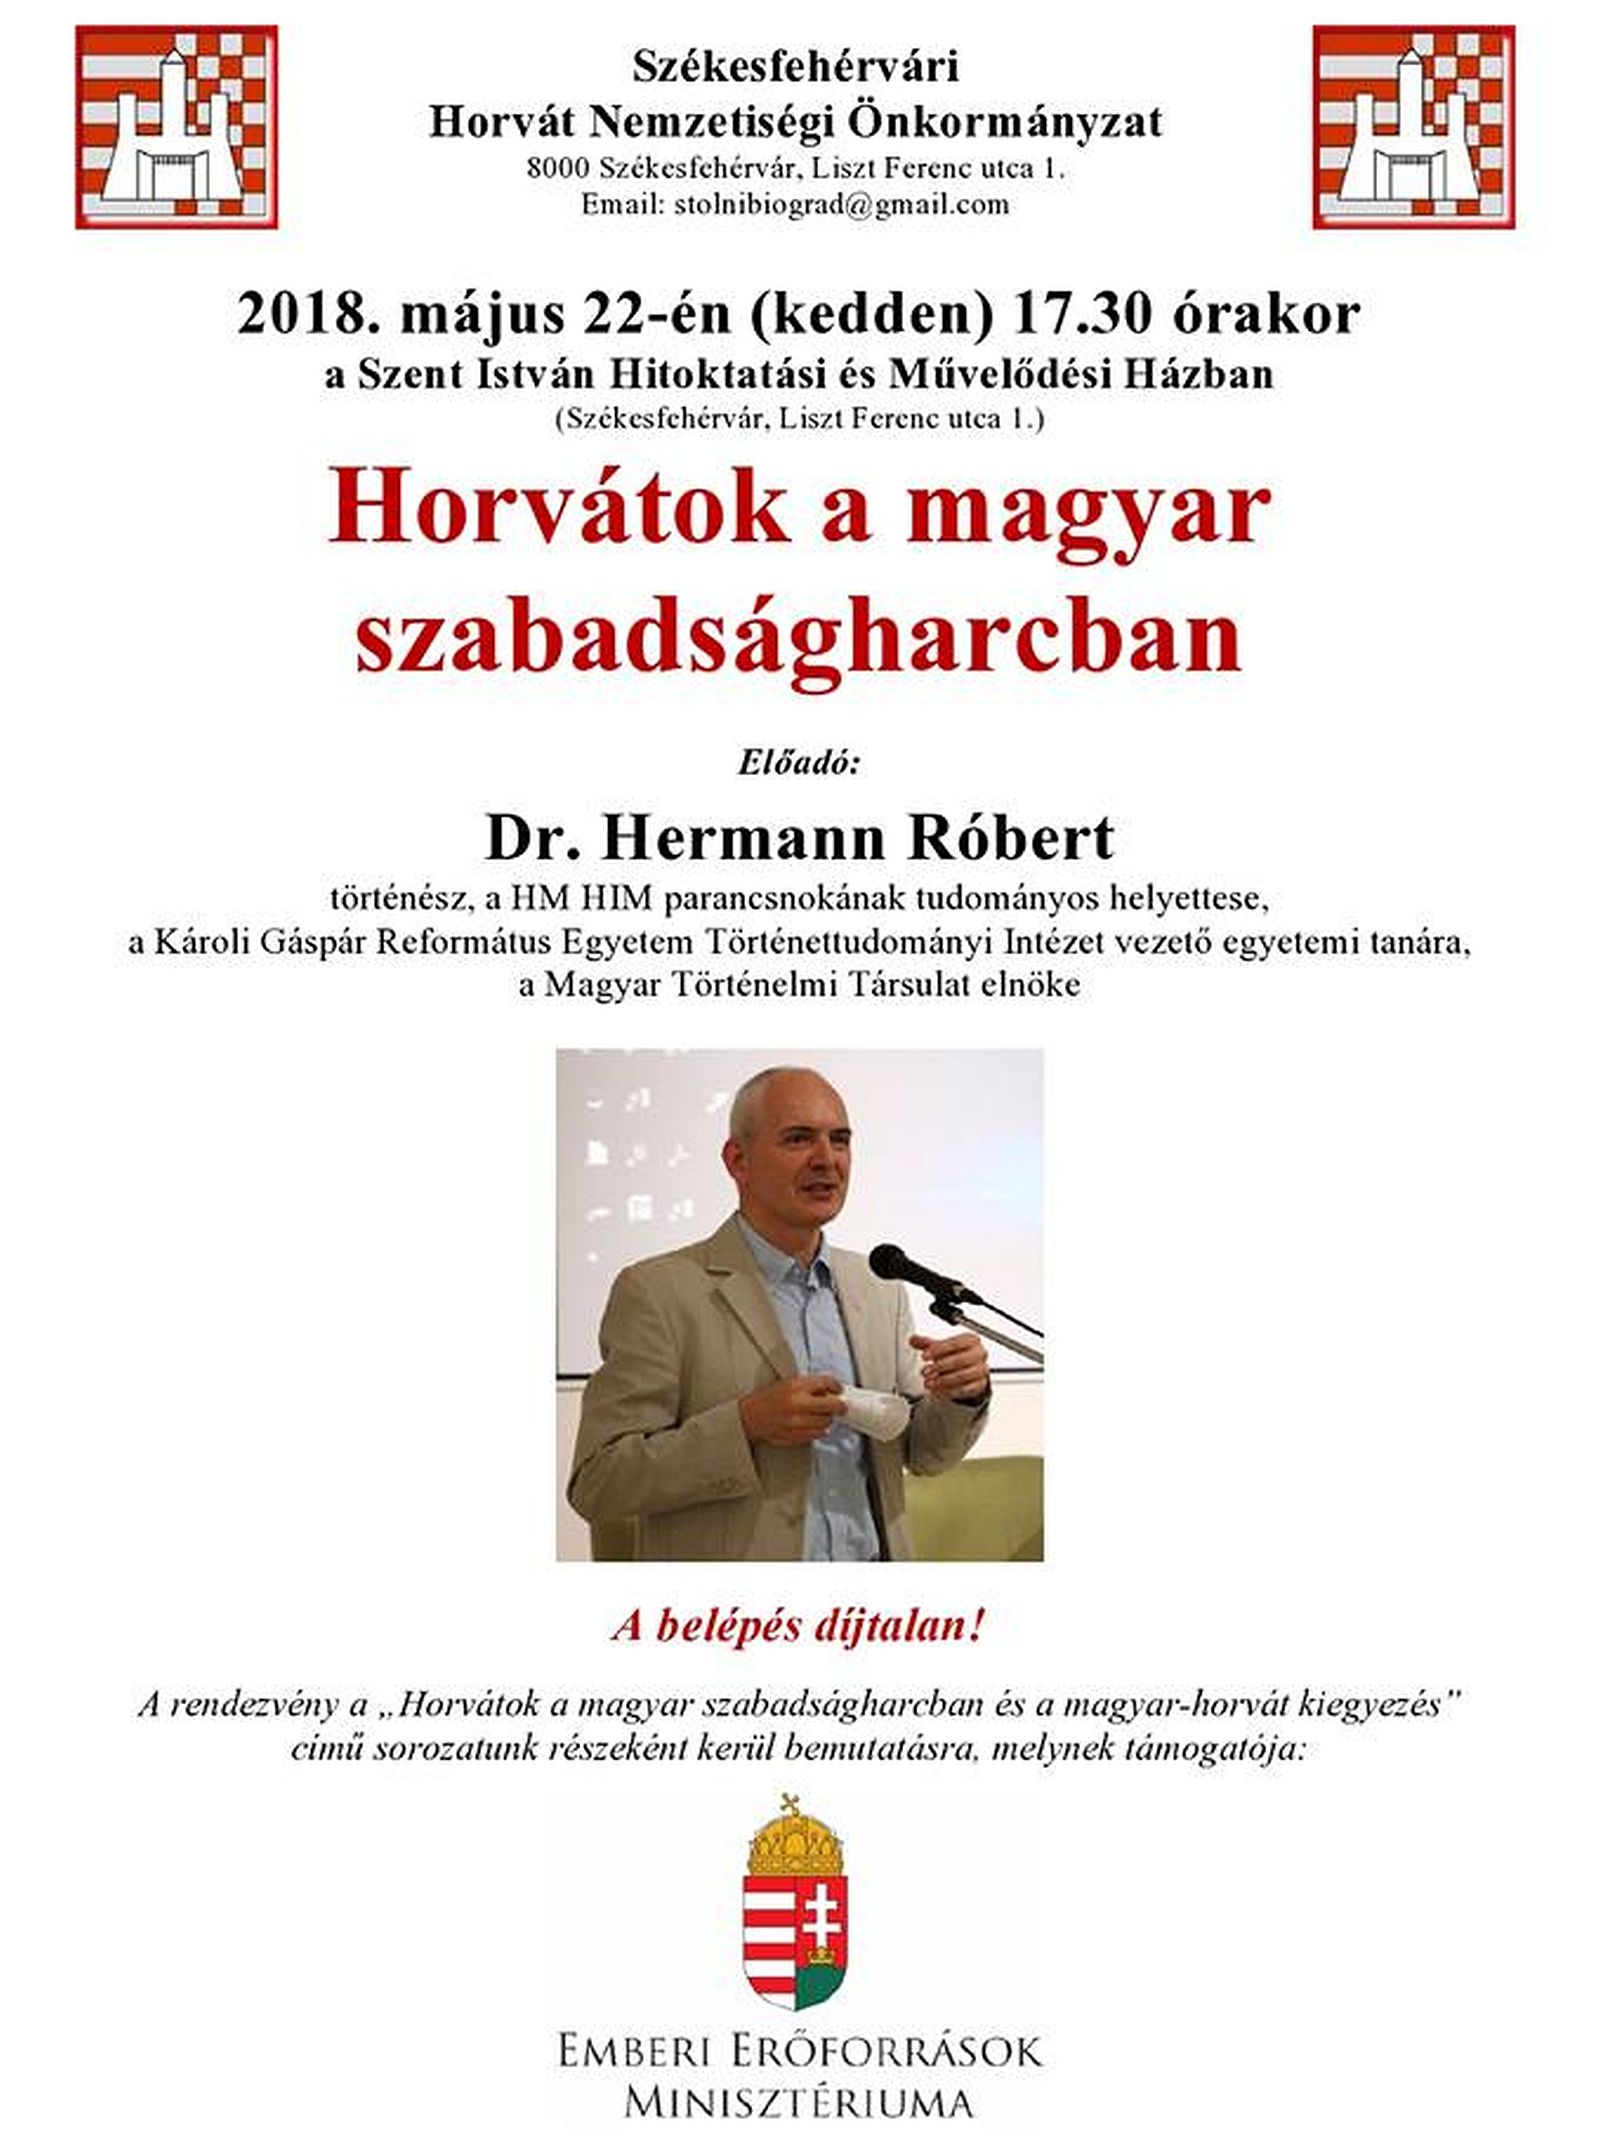 Horvátok a magyar szabadságharcban - Dr. Hermann Róbert előadása Fehérváron